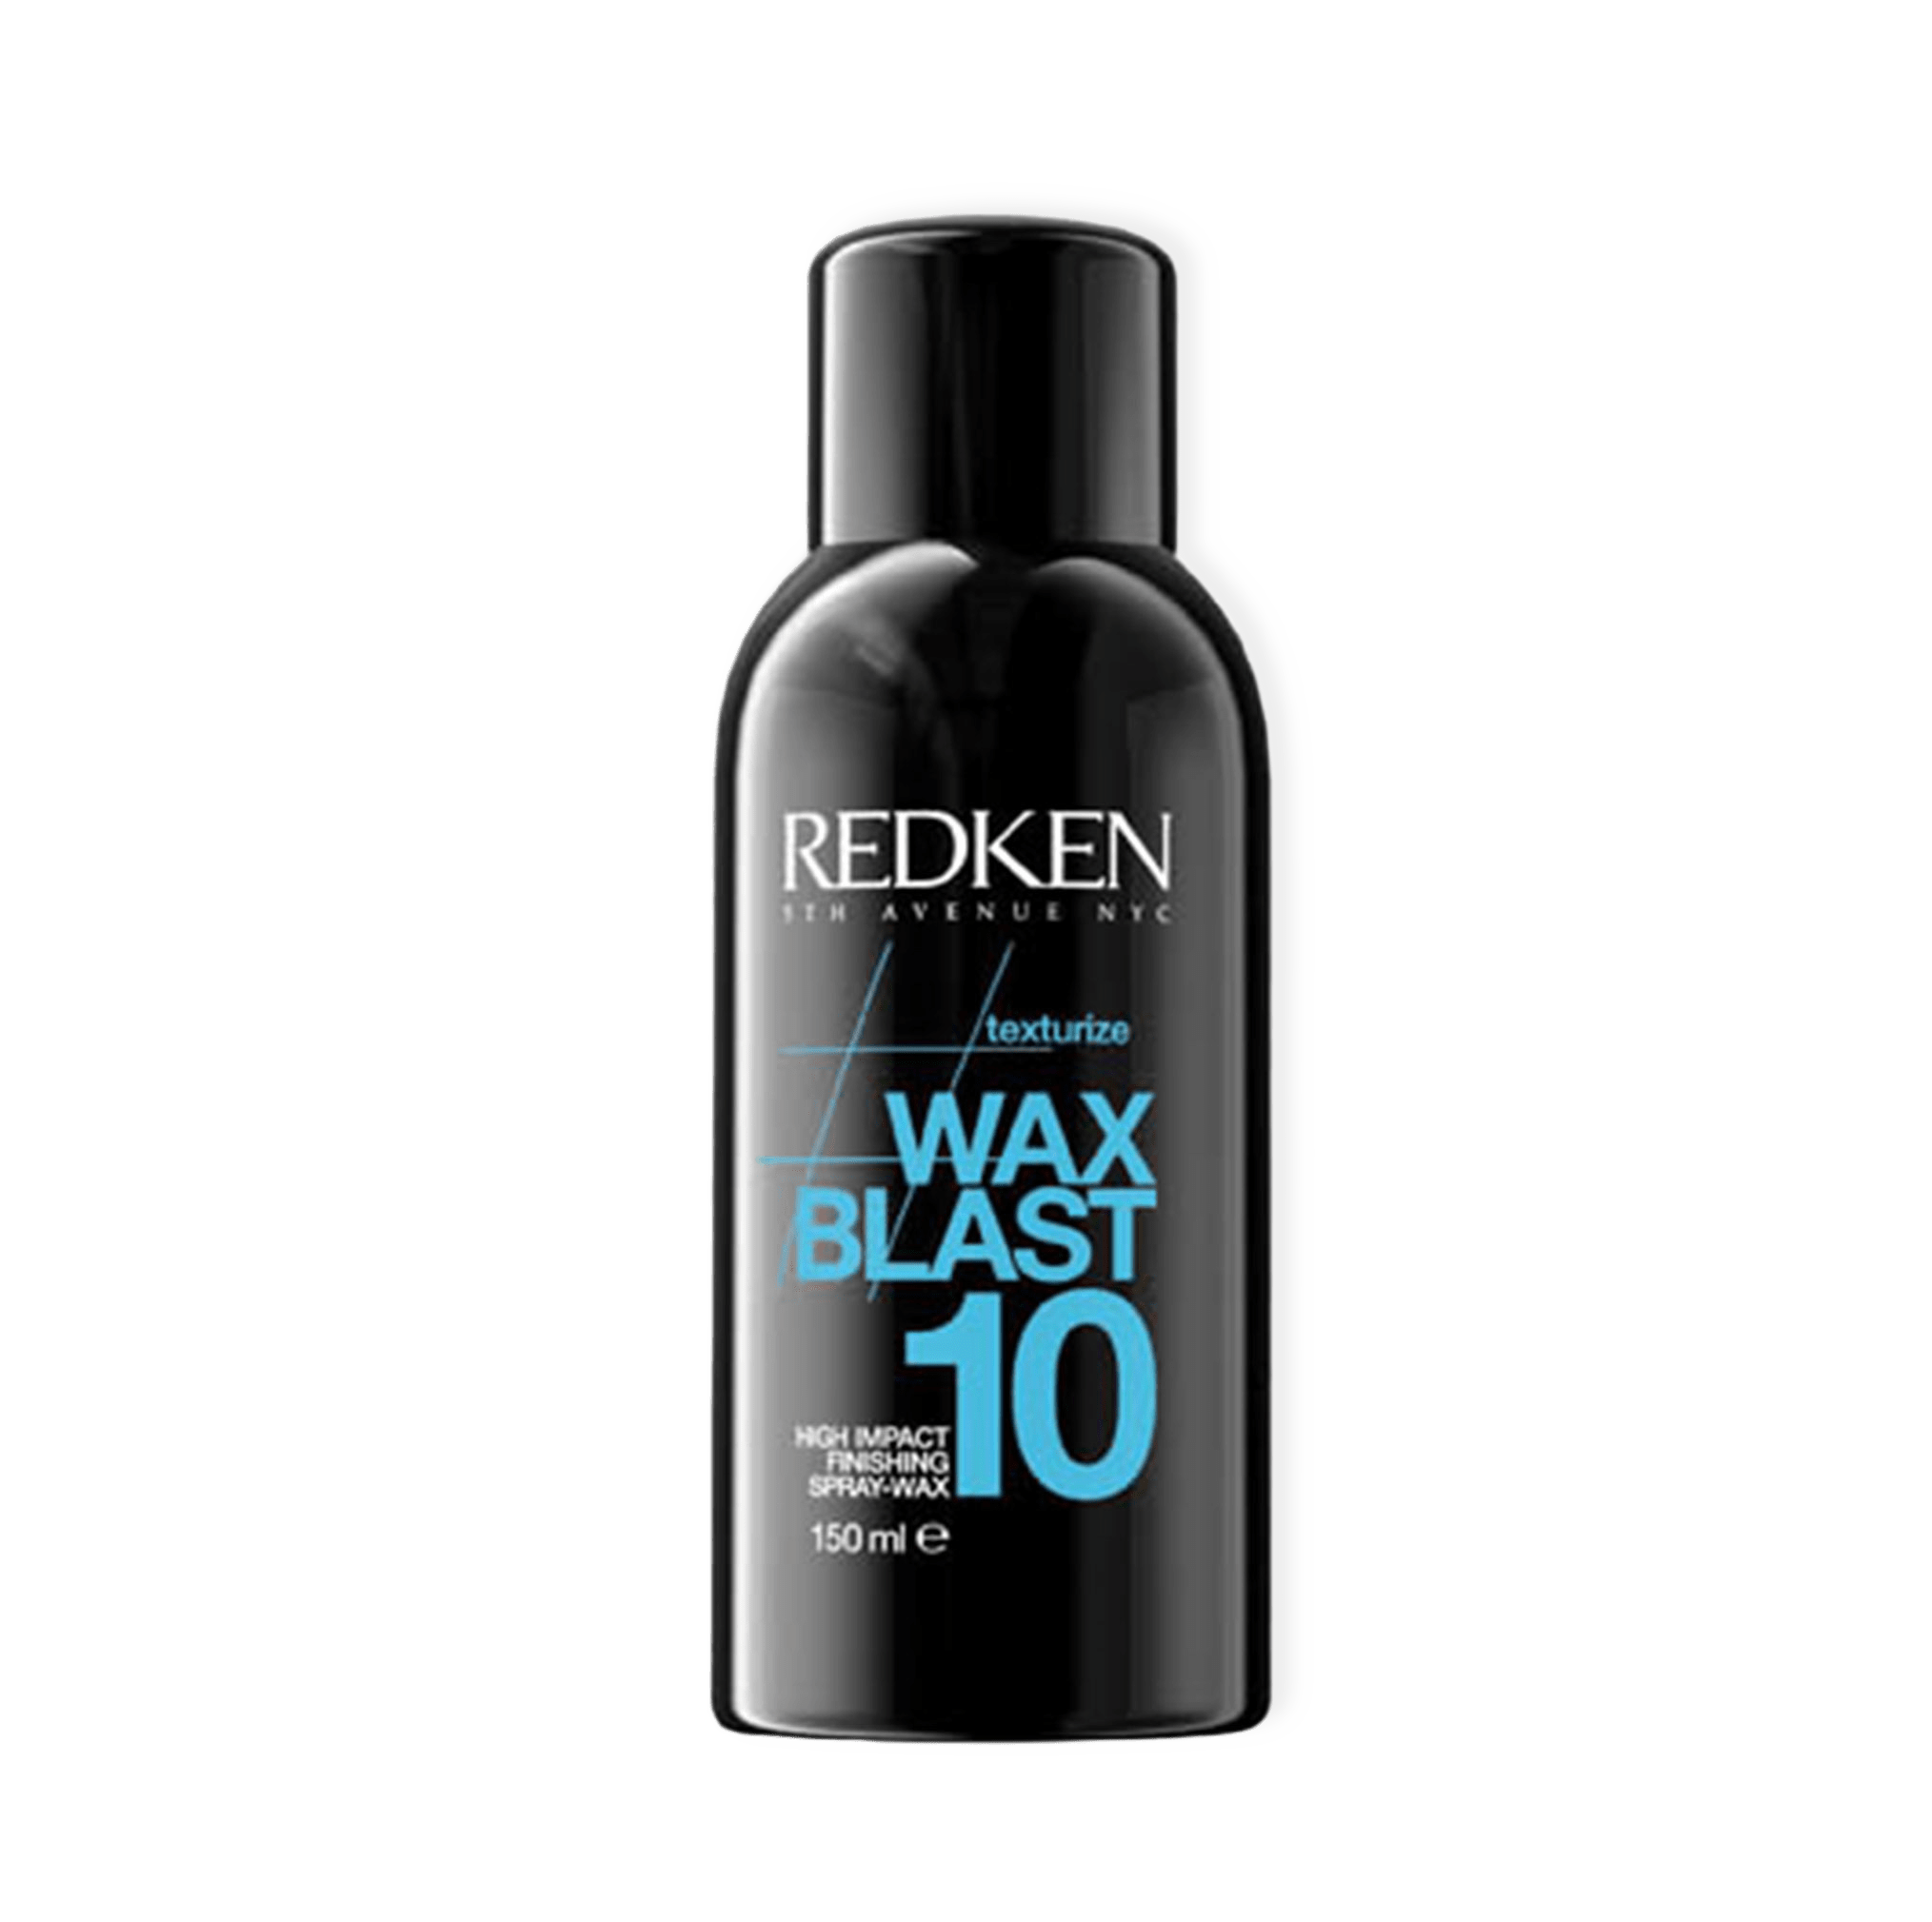 Wax Blast 10 Texture från Redken